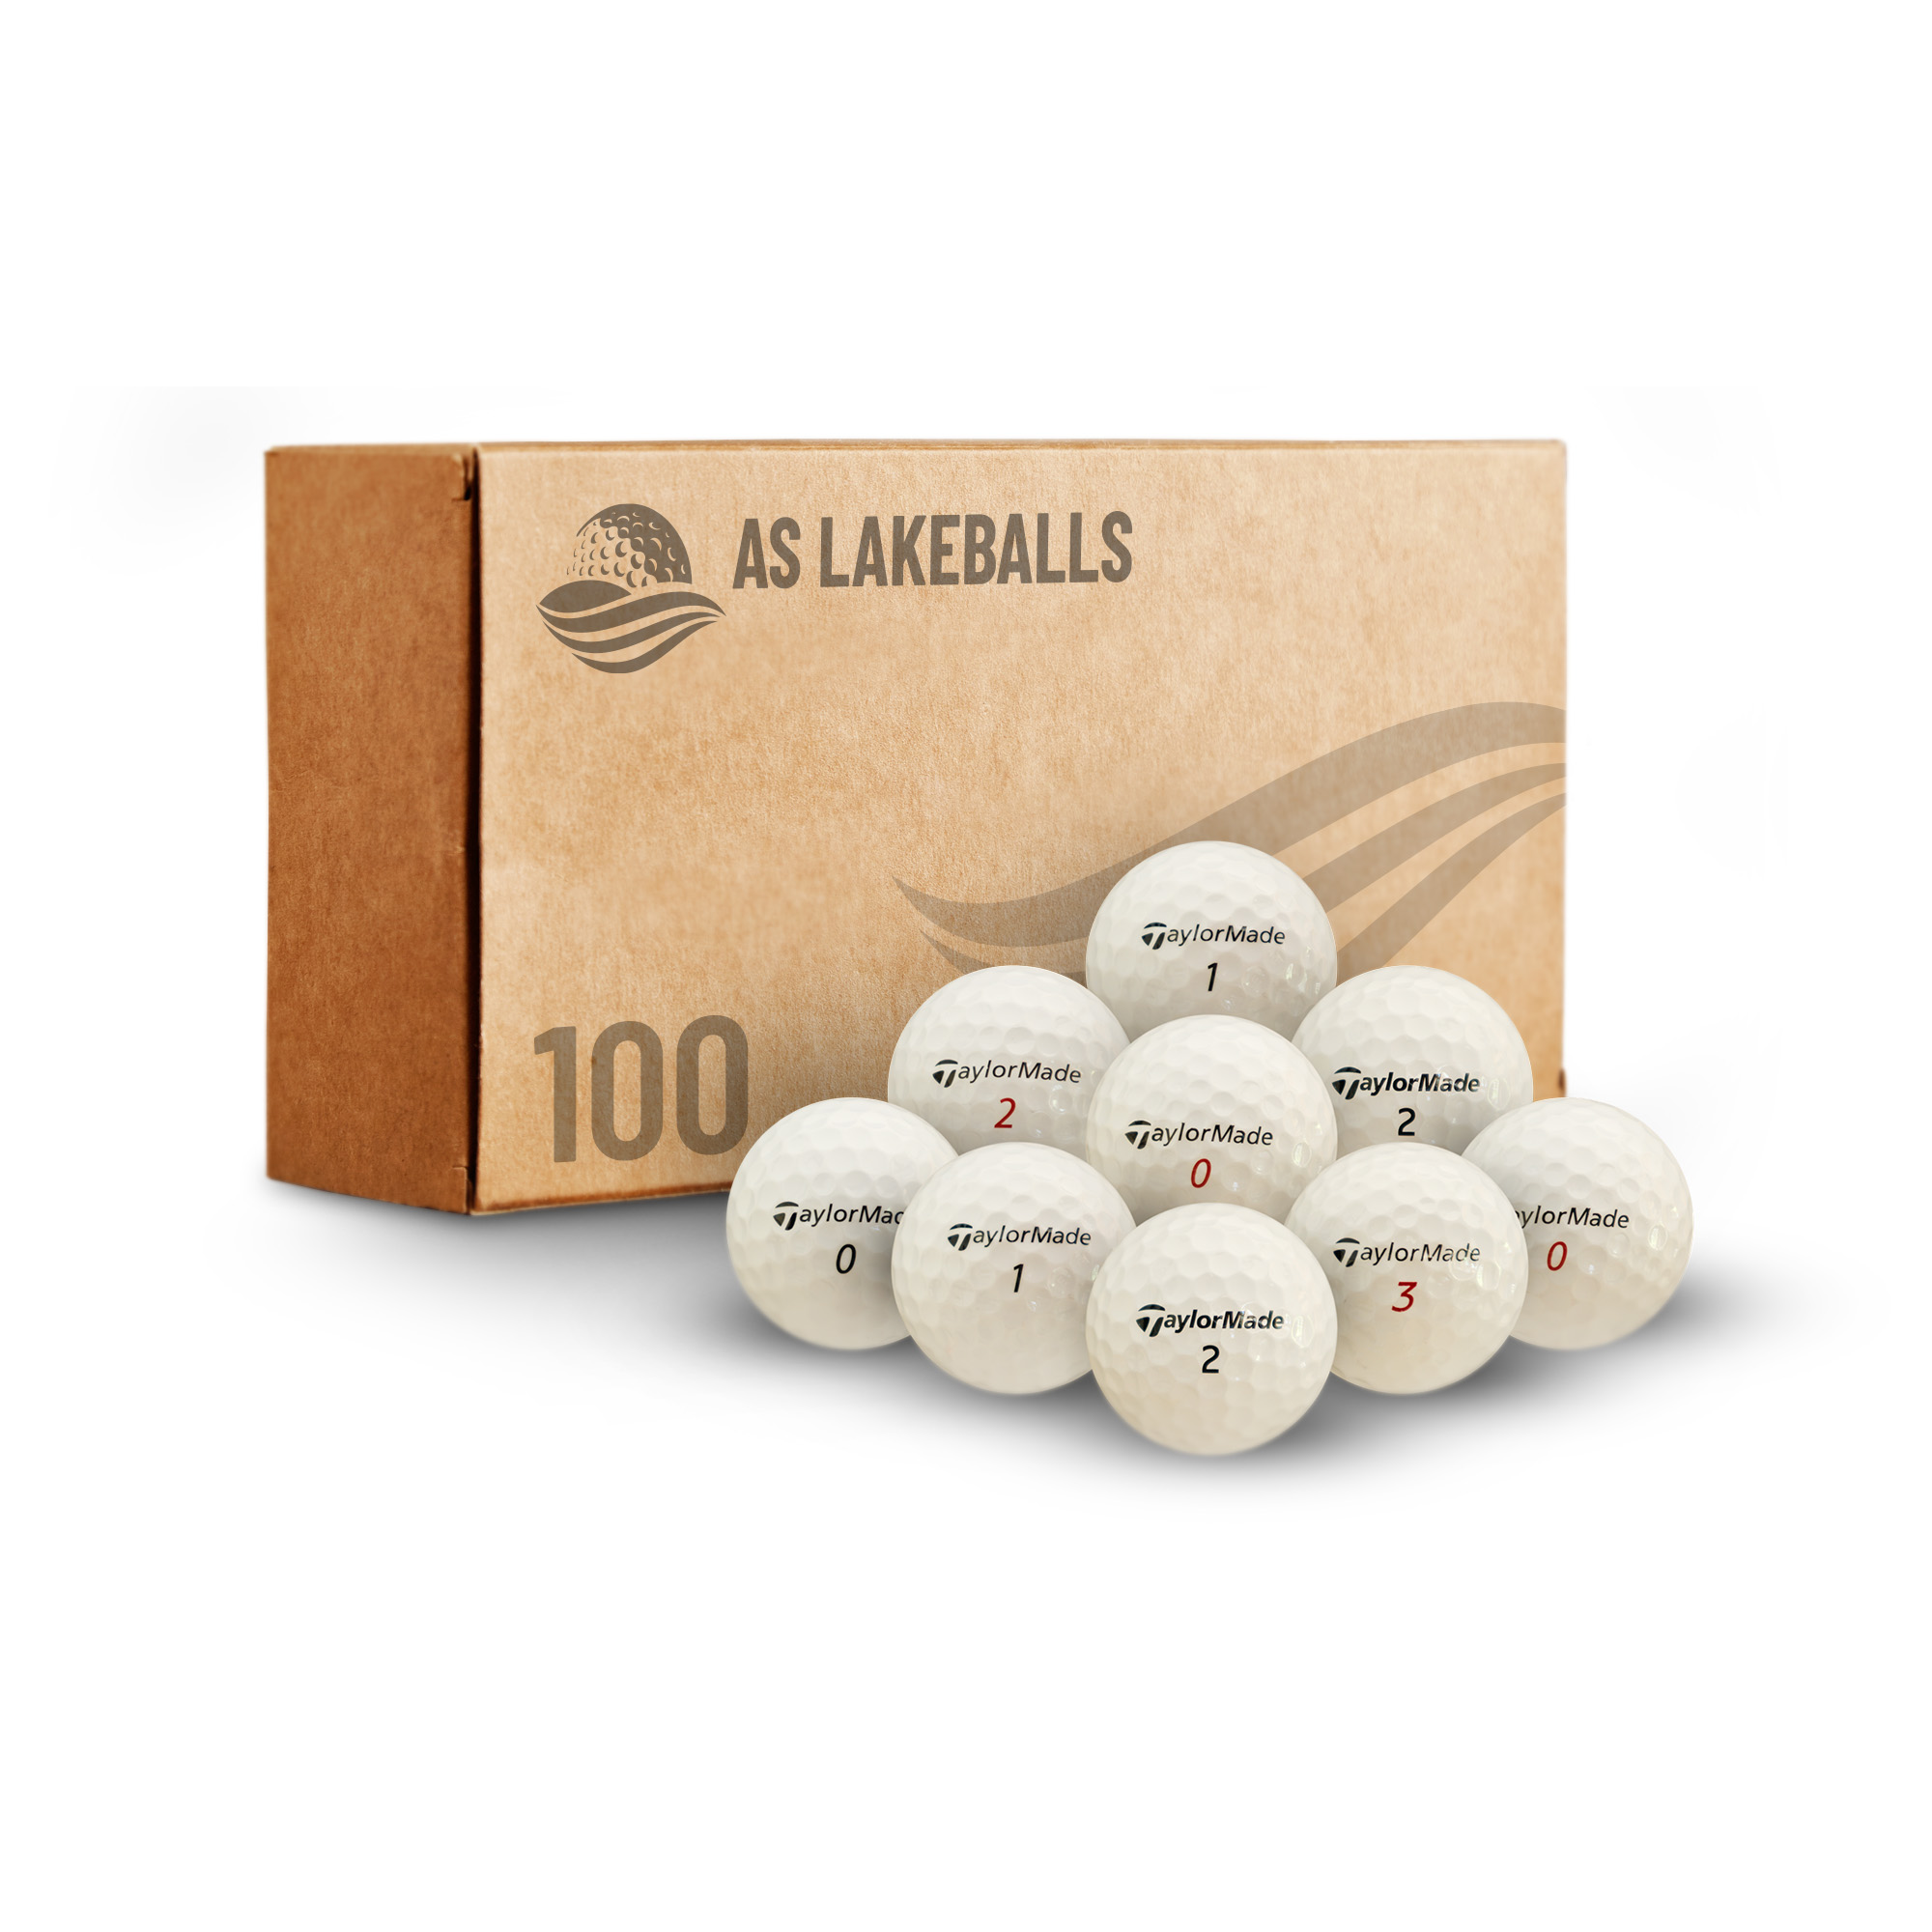 100 Taylor Made Mix AA-AAA Lakeballs bei AS Lakeballs günstig kaufen